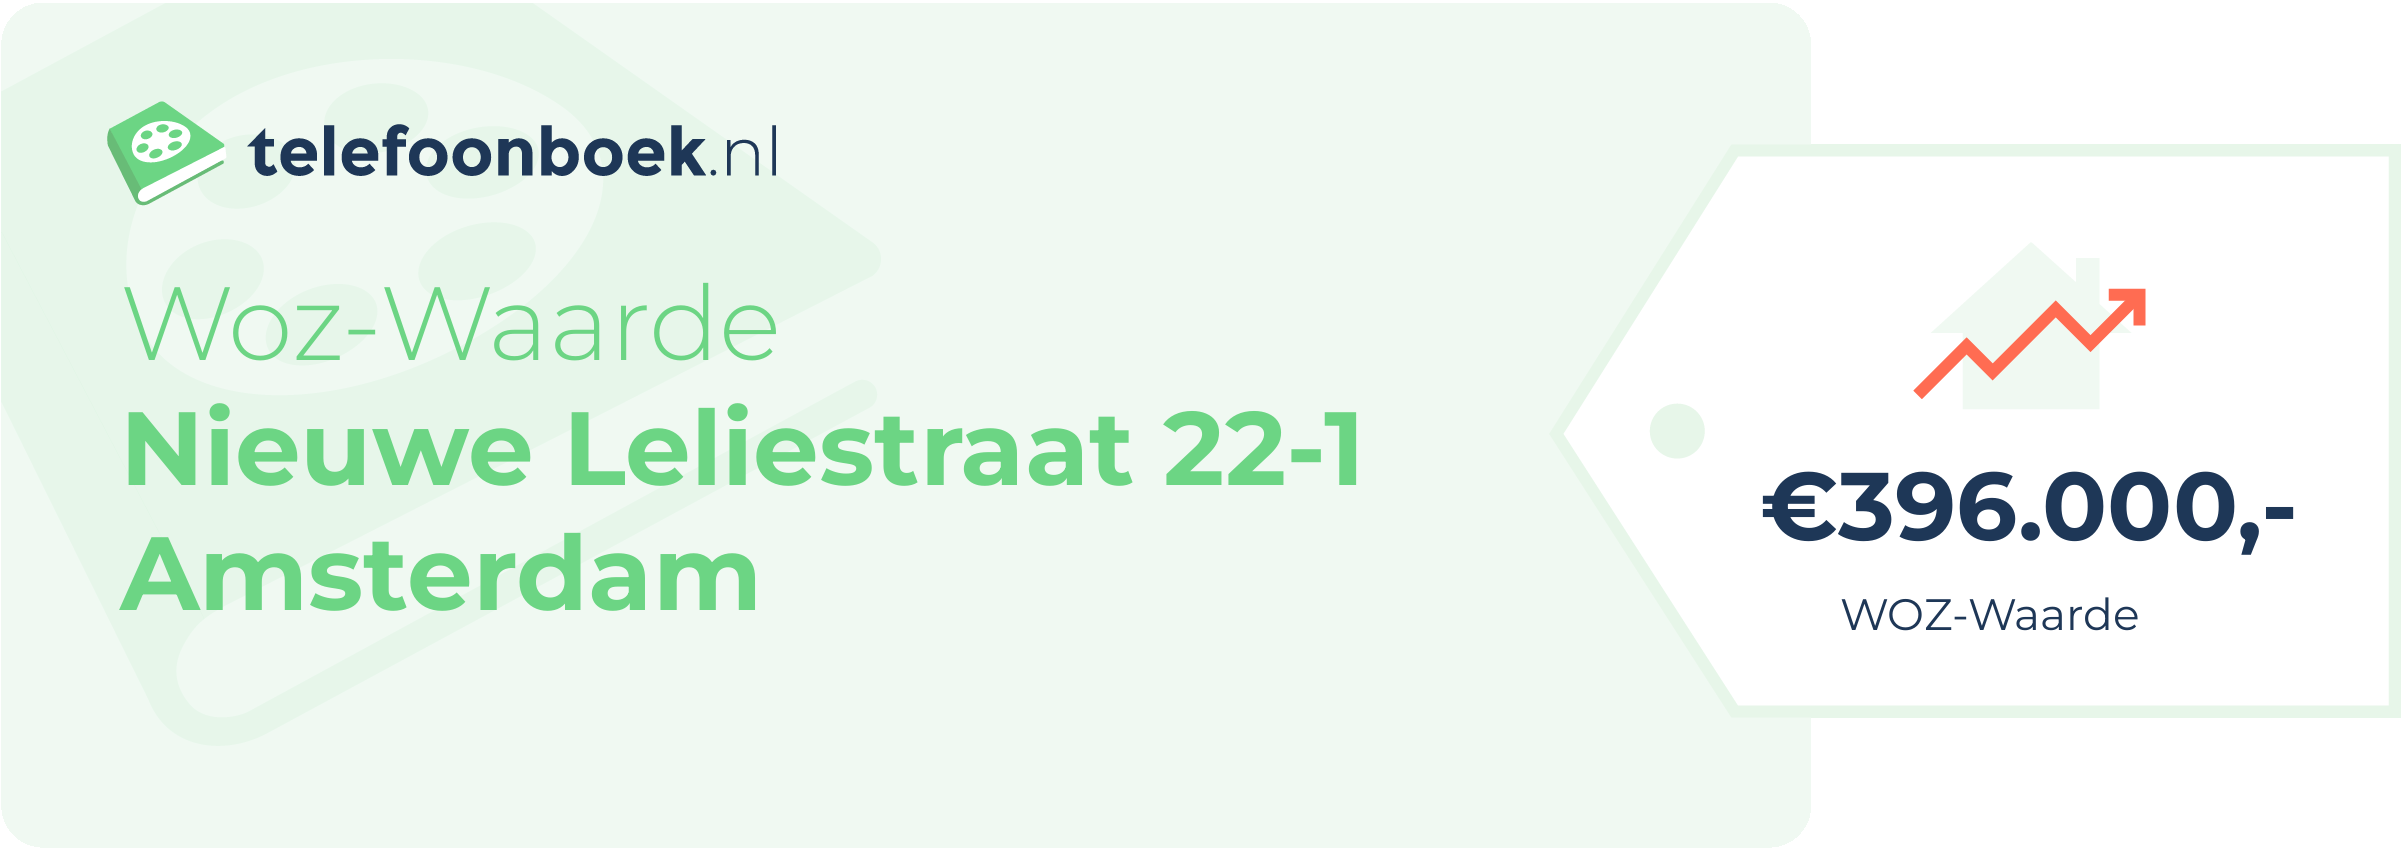 WOZ-waarde Nieuwe Leliestraat 22-1 Amsterdam